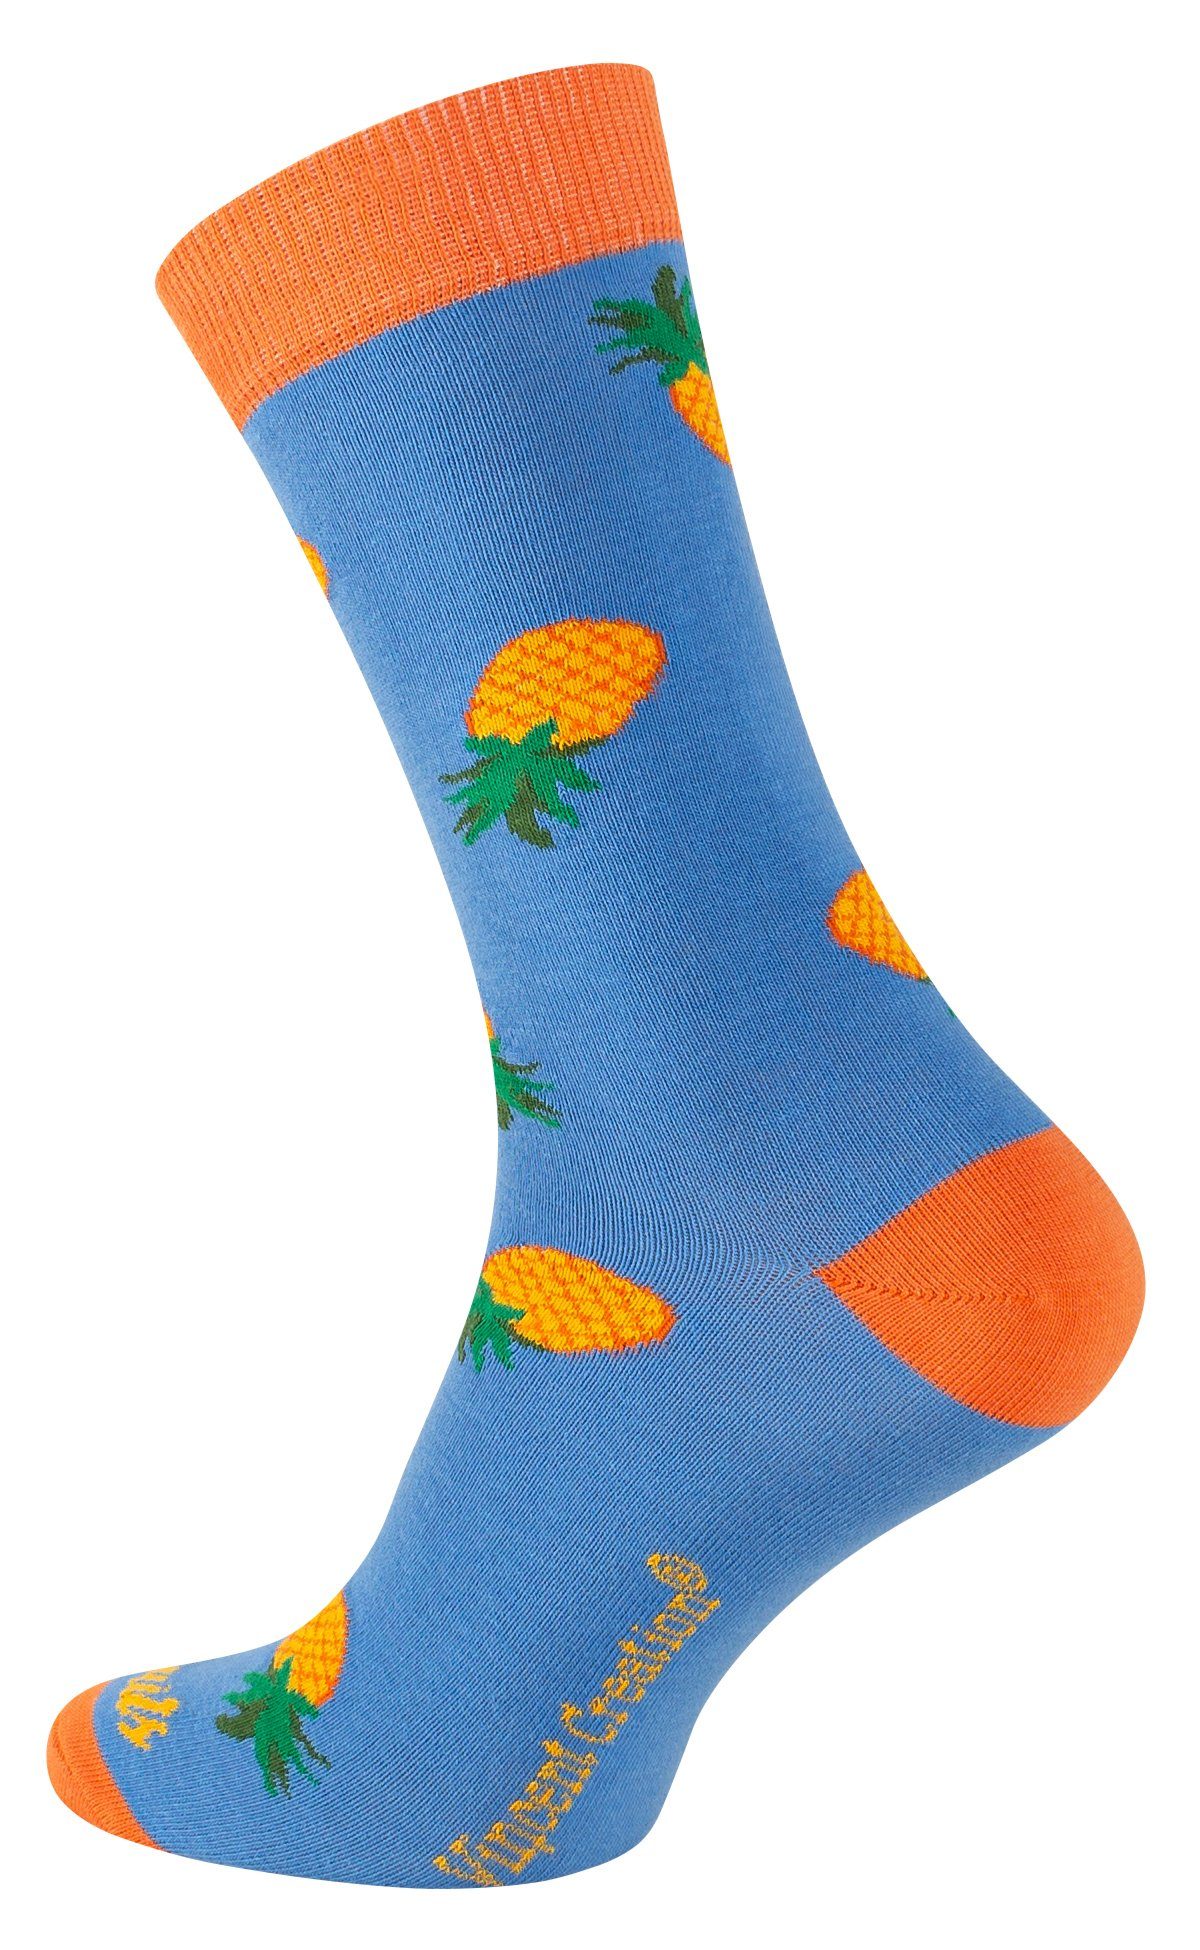 Vincent Baumwollqualität mit Creation® (3-Paar) Socken angenehmer in Design Früchte